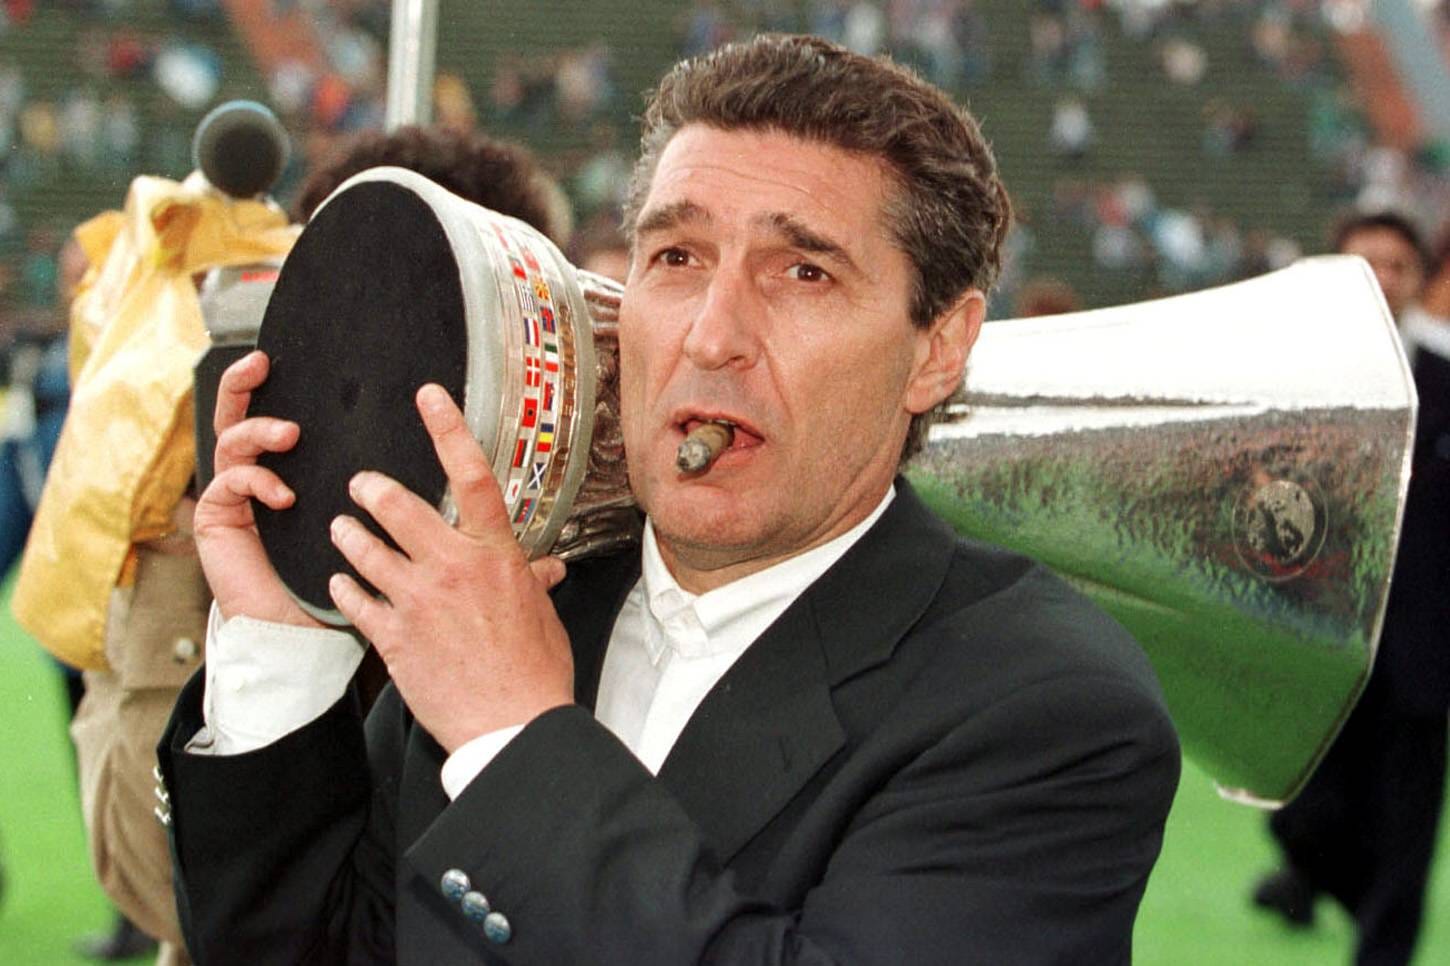 6. Februar: Manager- und Schalke-Legende Rudi Assauer verstirbt im Alter von 74 Jahren. Assauer hatte jahrelang an Alzheimer gelitten. Der Triumph im Europapokal 1997 war der größte Erfolg in Assauers Laufbahn als Schalke-Manager.